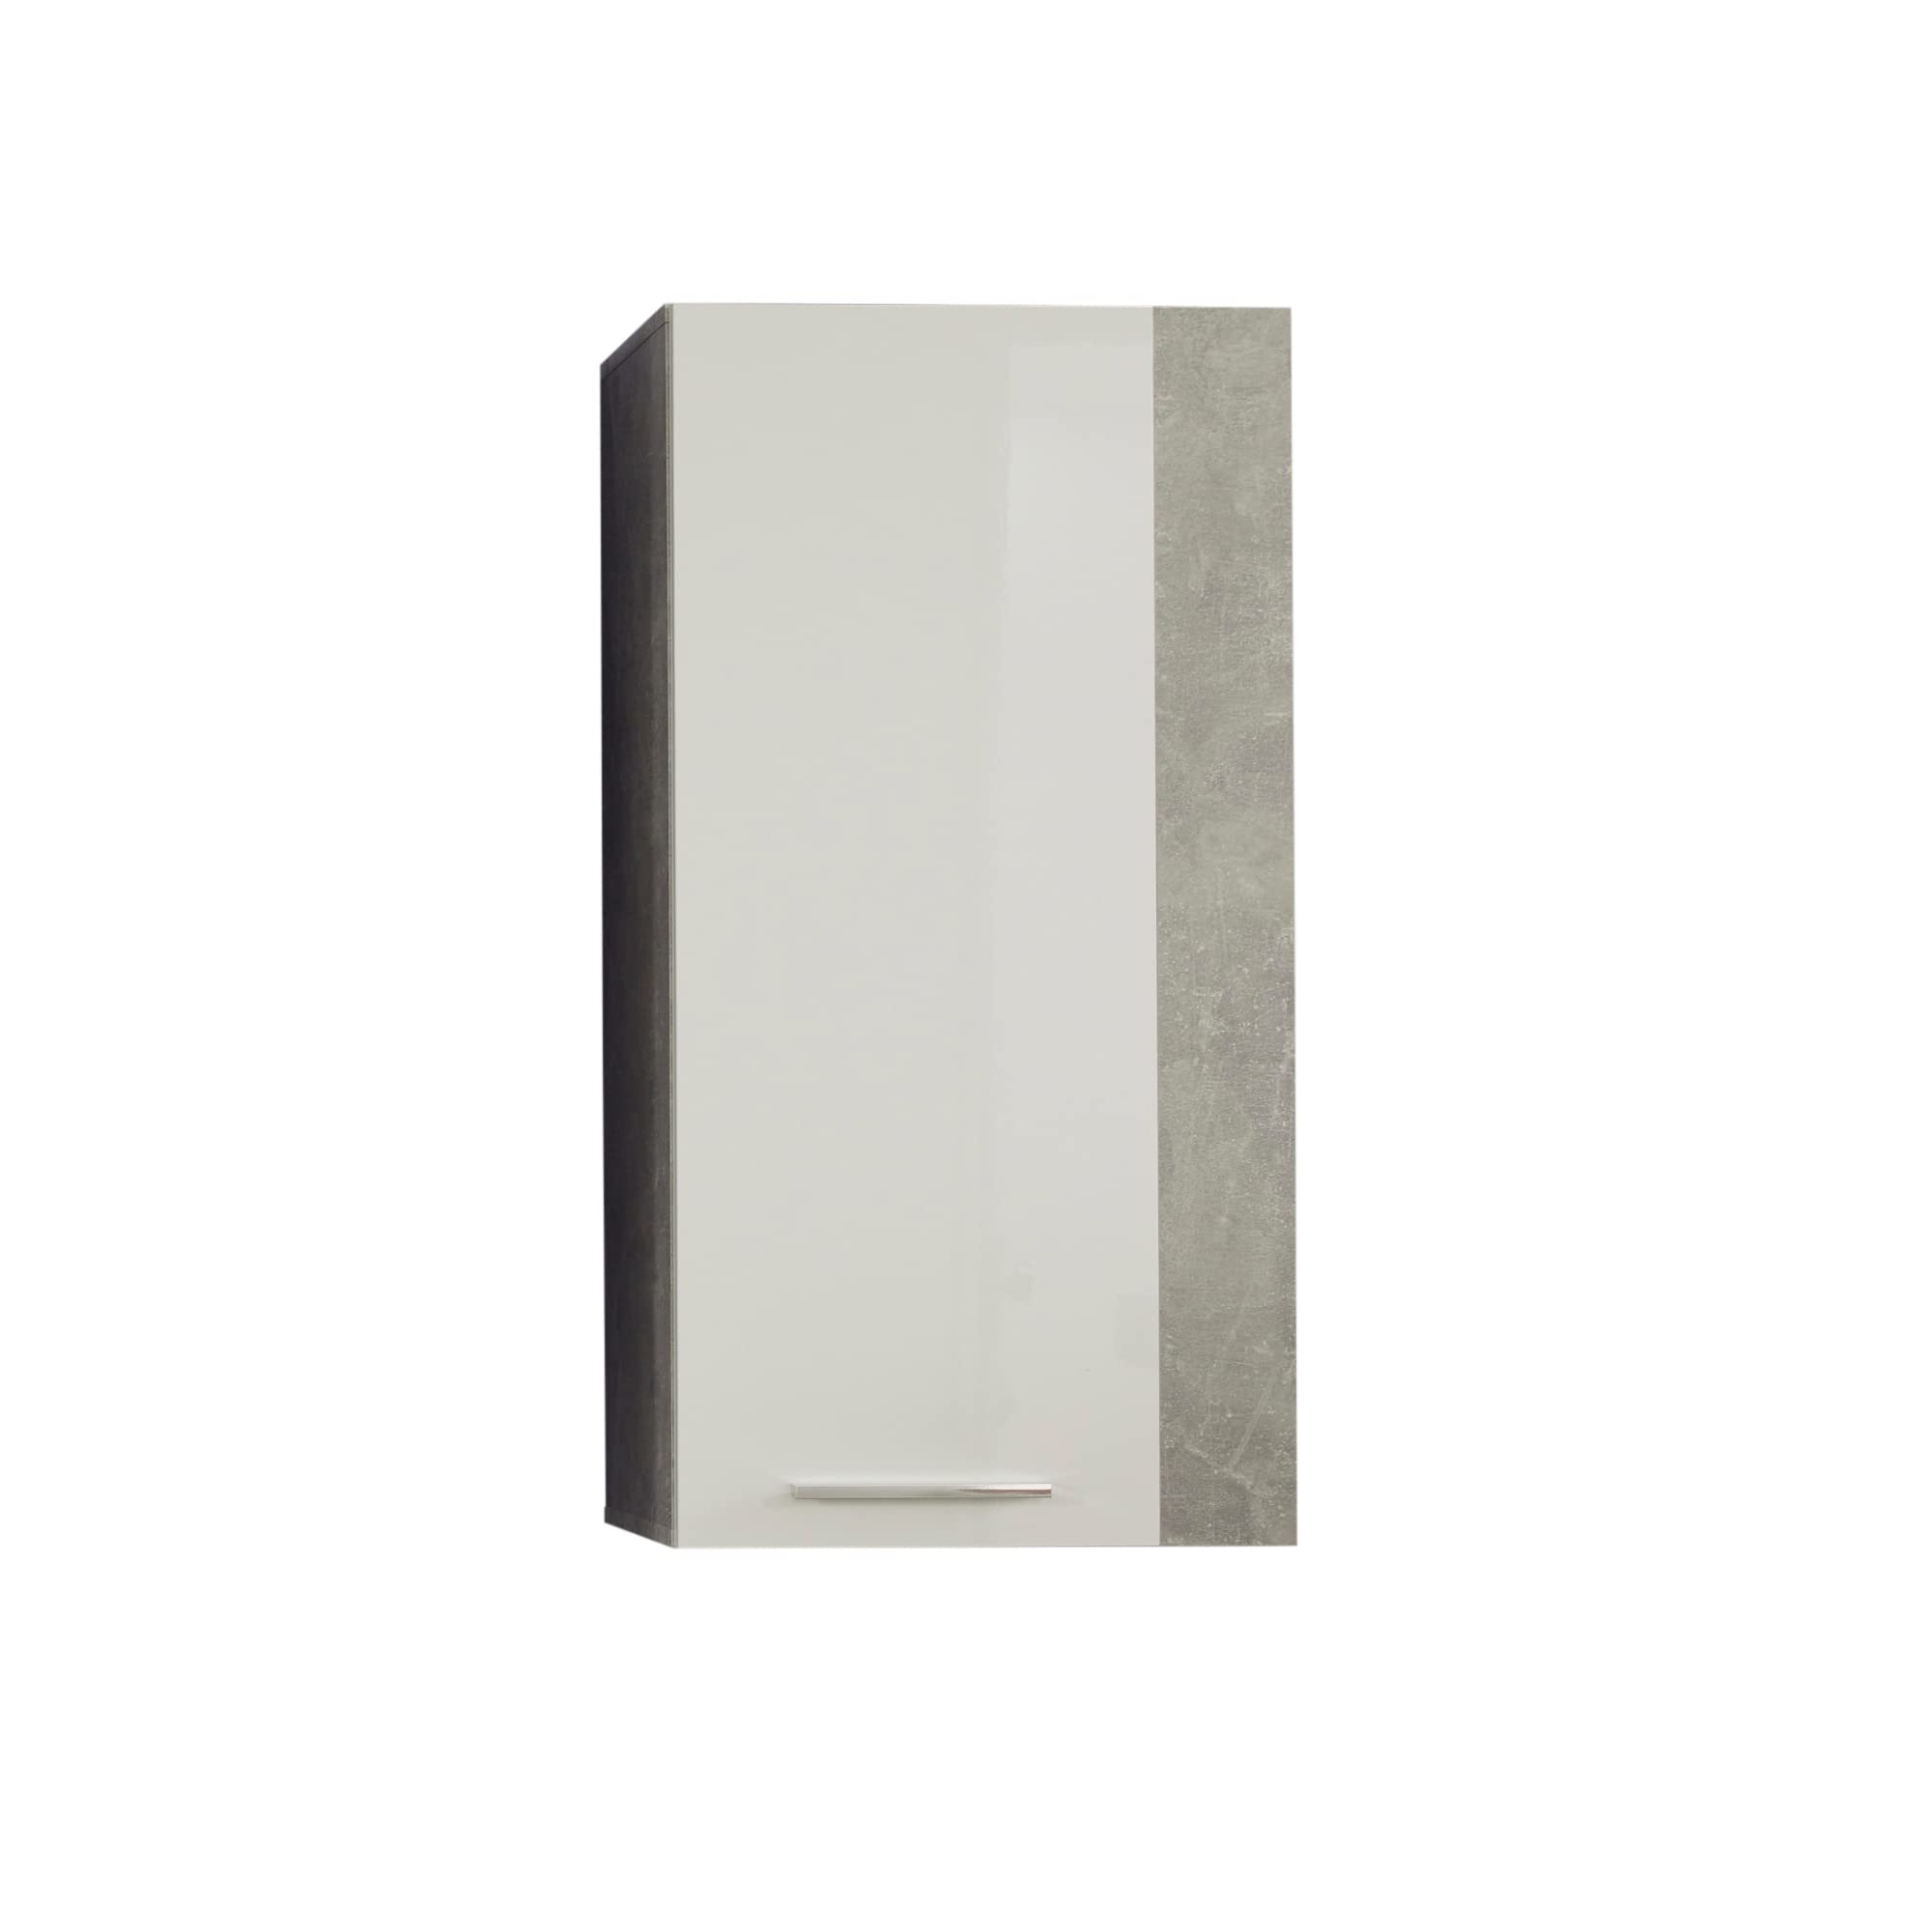 trendteam smart living - Hängeschrank Wandschrank - Wohnen - Rock - Aufbaumaße (BxHxT) 52 x 103 x 31 cm - Farbe Stone mit Weiß Hochglanz - 182653735